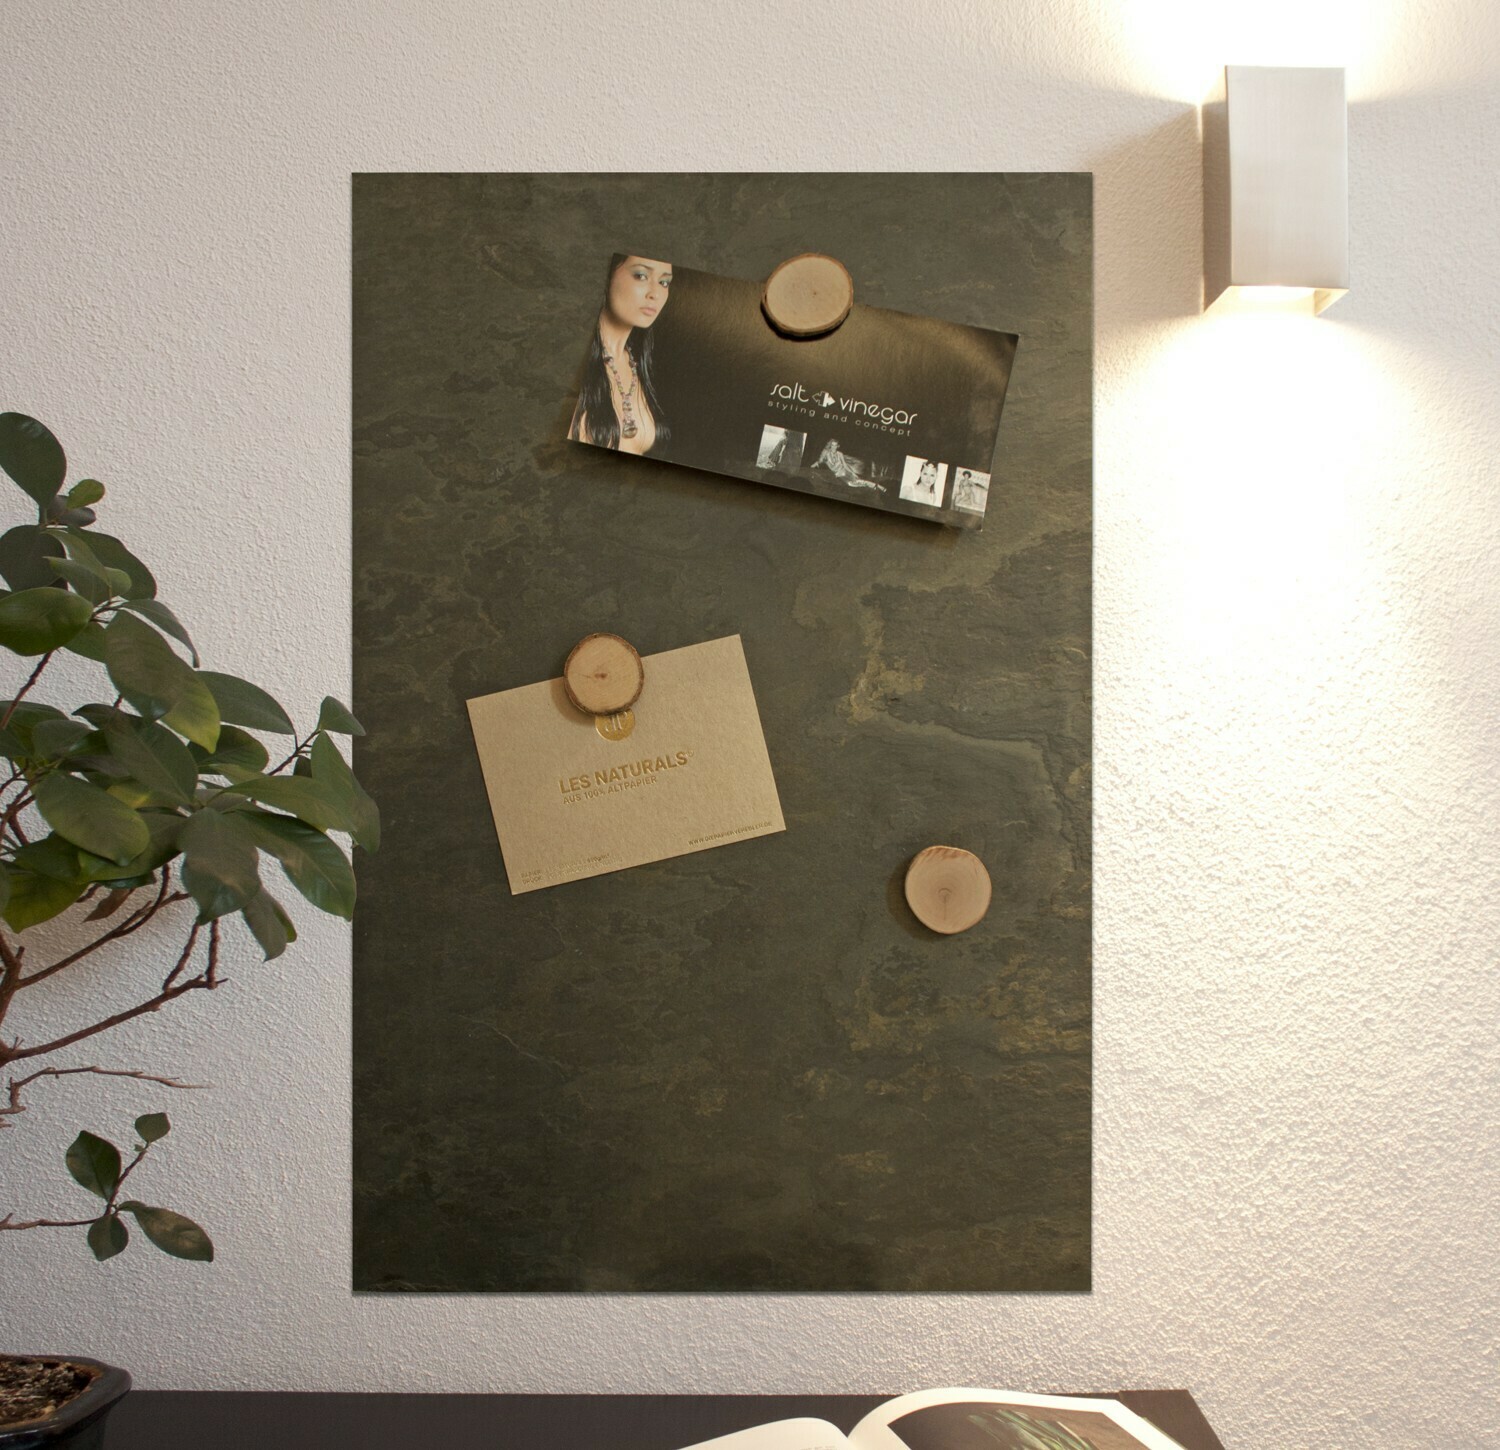 ! Echter Stein Massivstein Kreidetafel in 60 cm x 40 cm Schiefer Magnettafel 